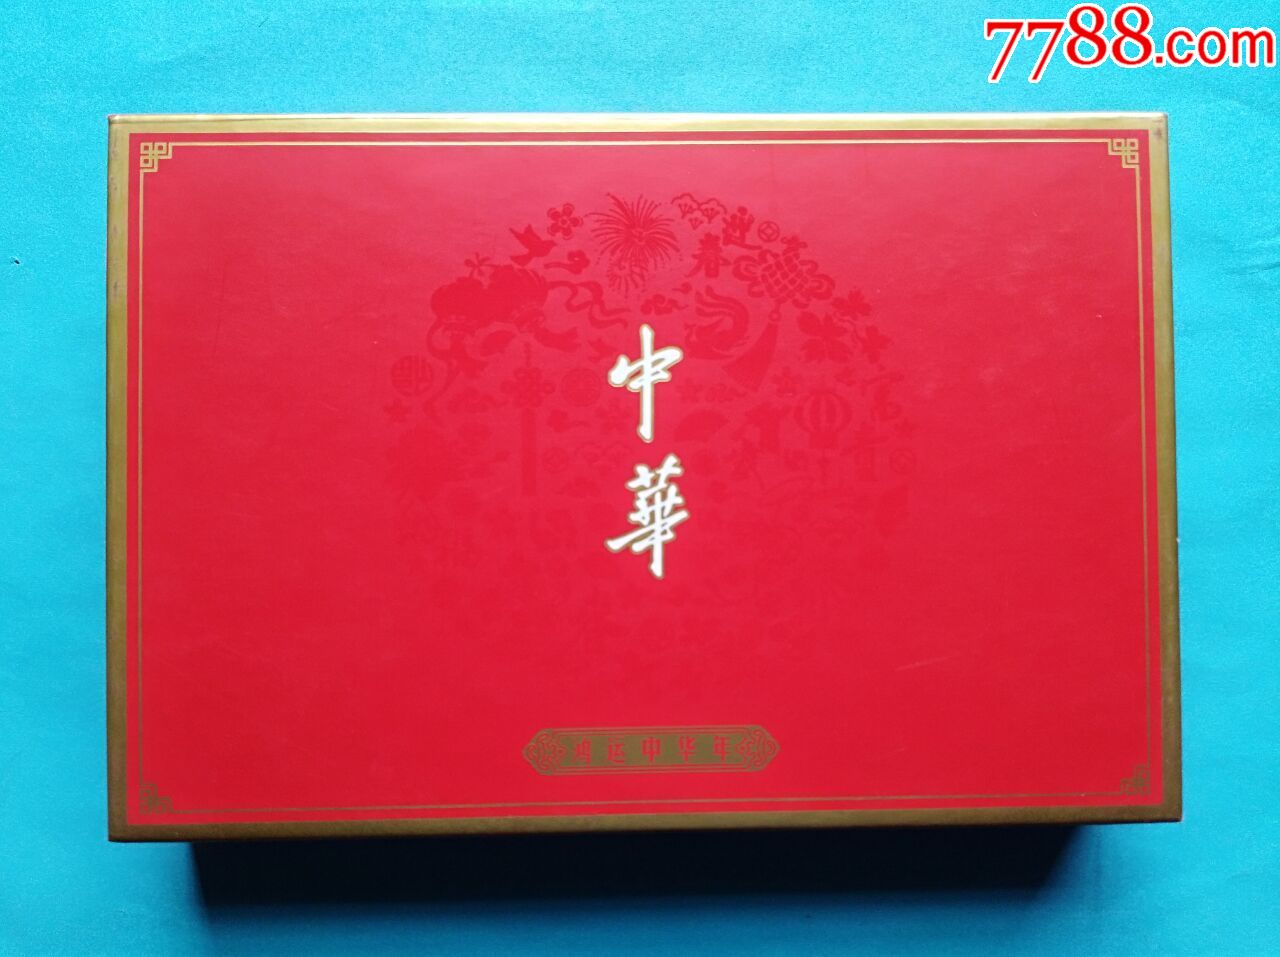 中华香烟礼品盒8包装图片